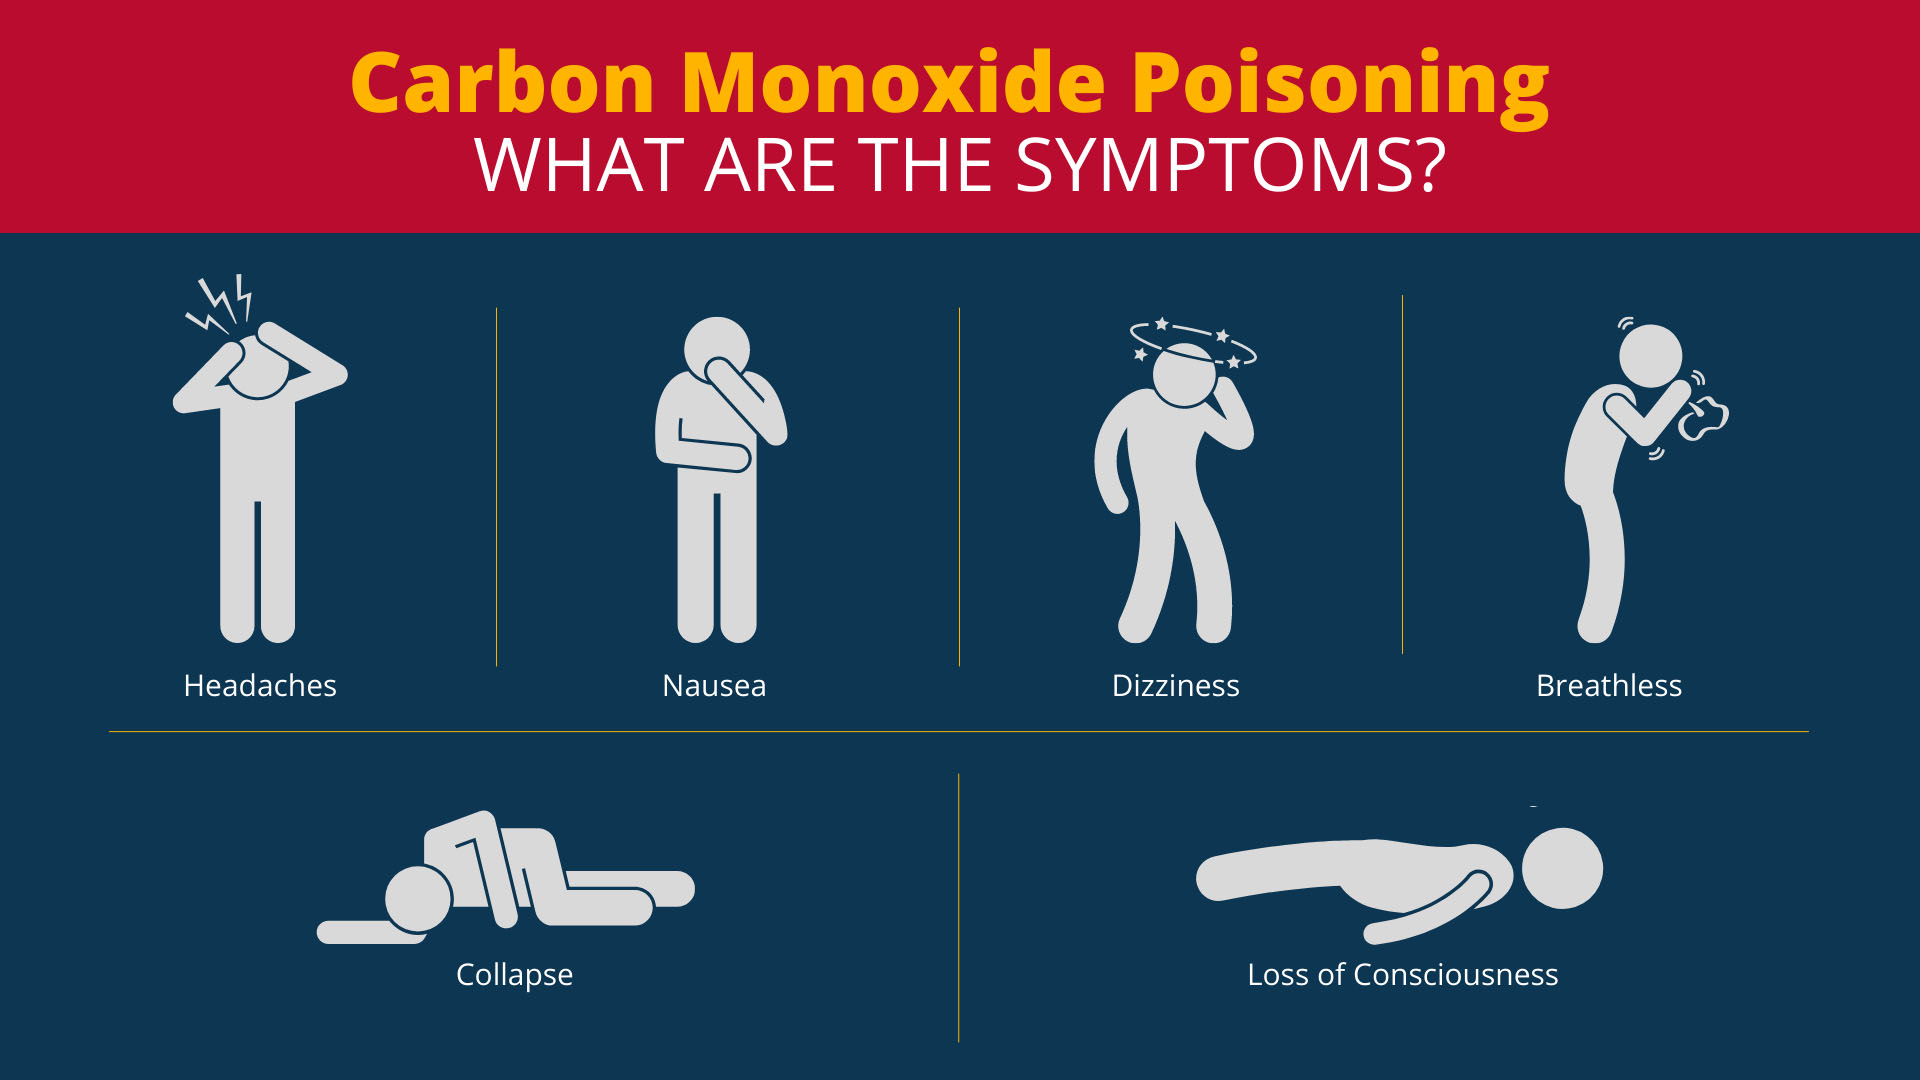 Carbon Monoxide Poisoning symptoms diagram